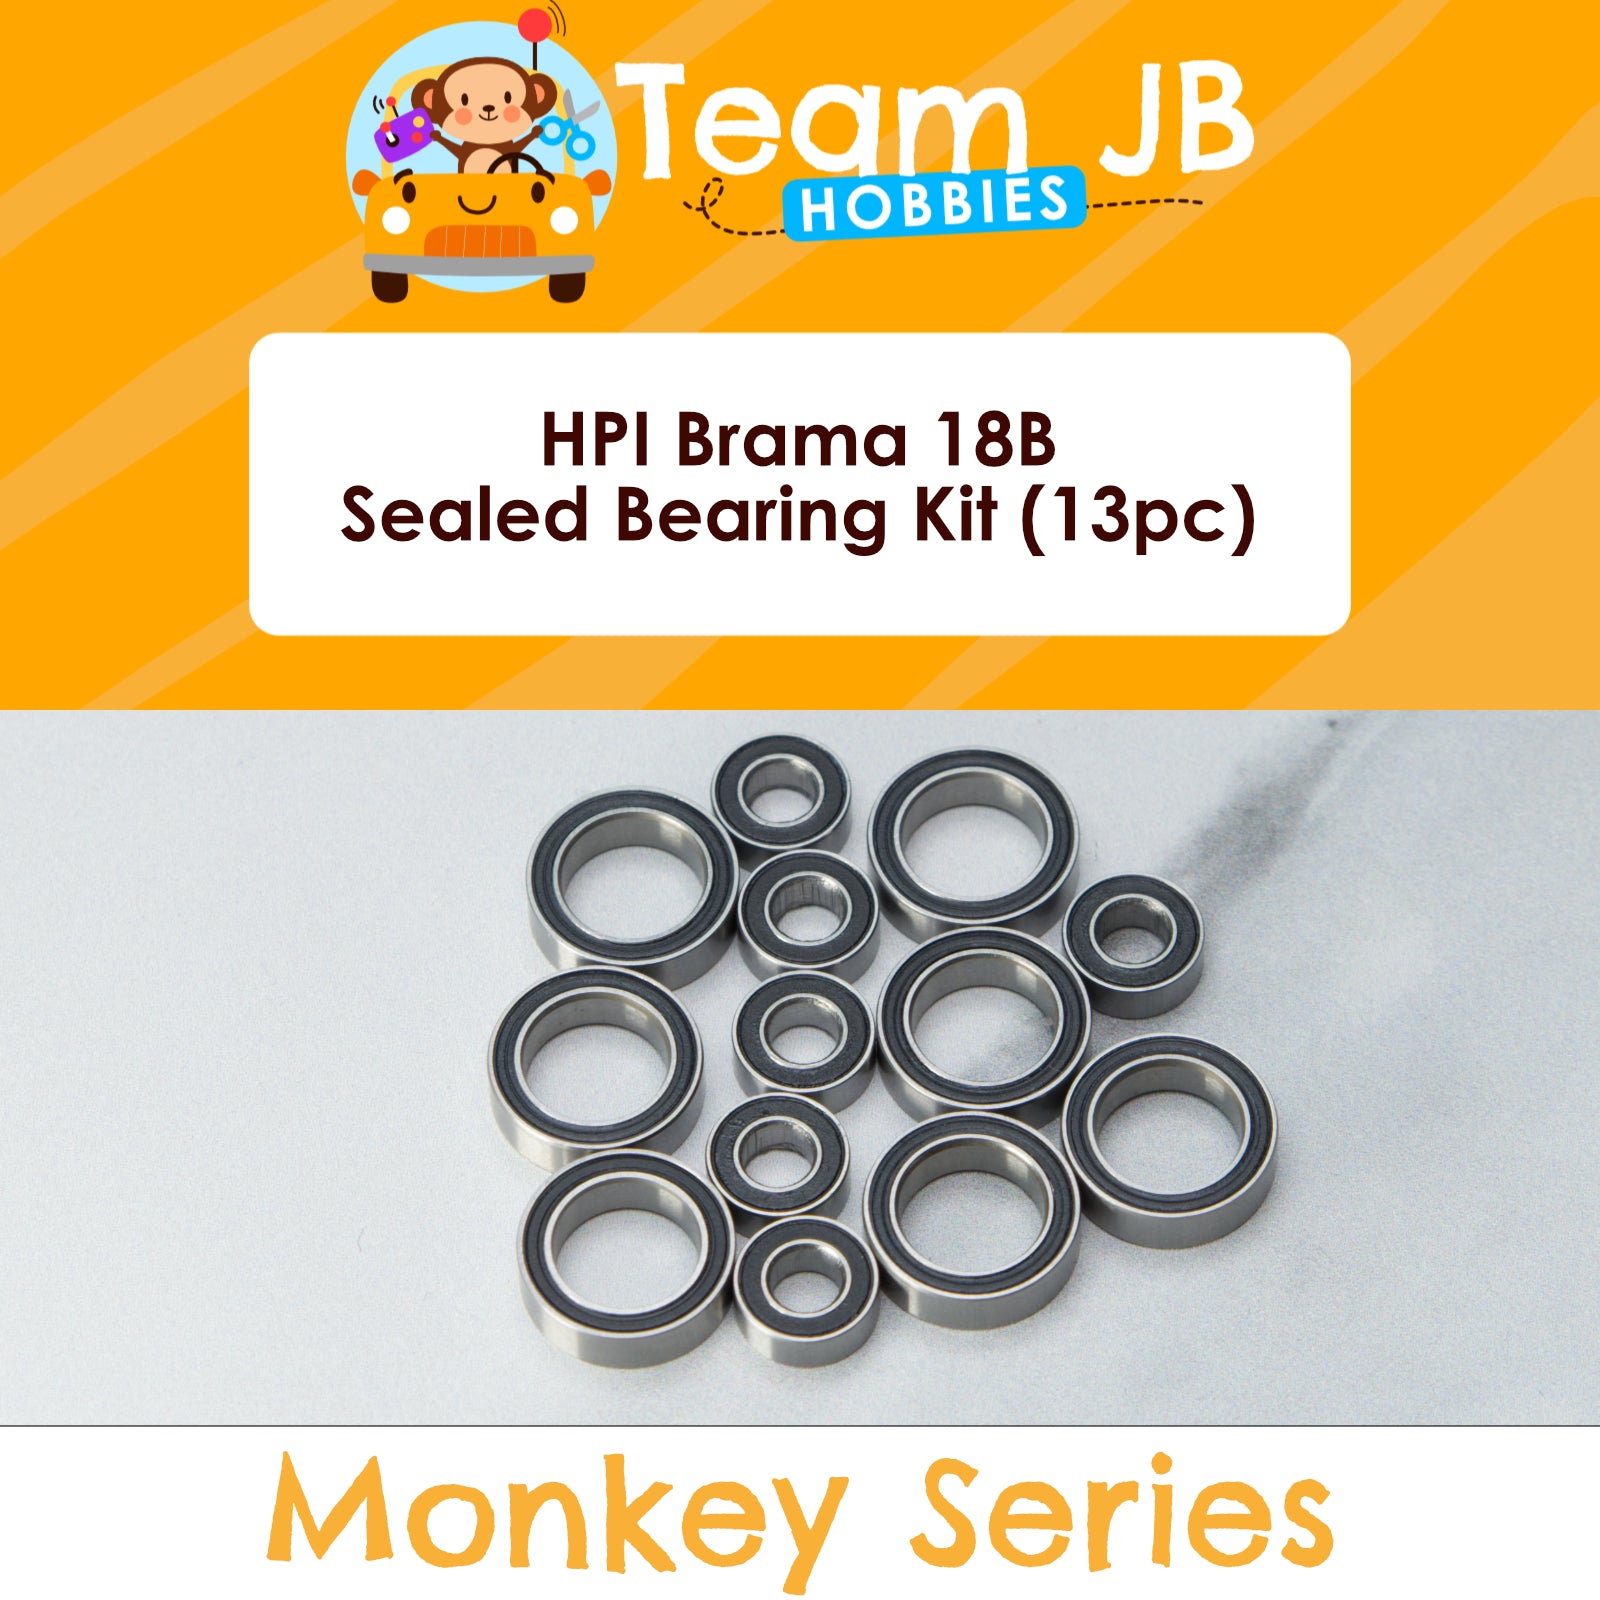 HPI Brama 18B - Sealed Bearing Kit